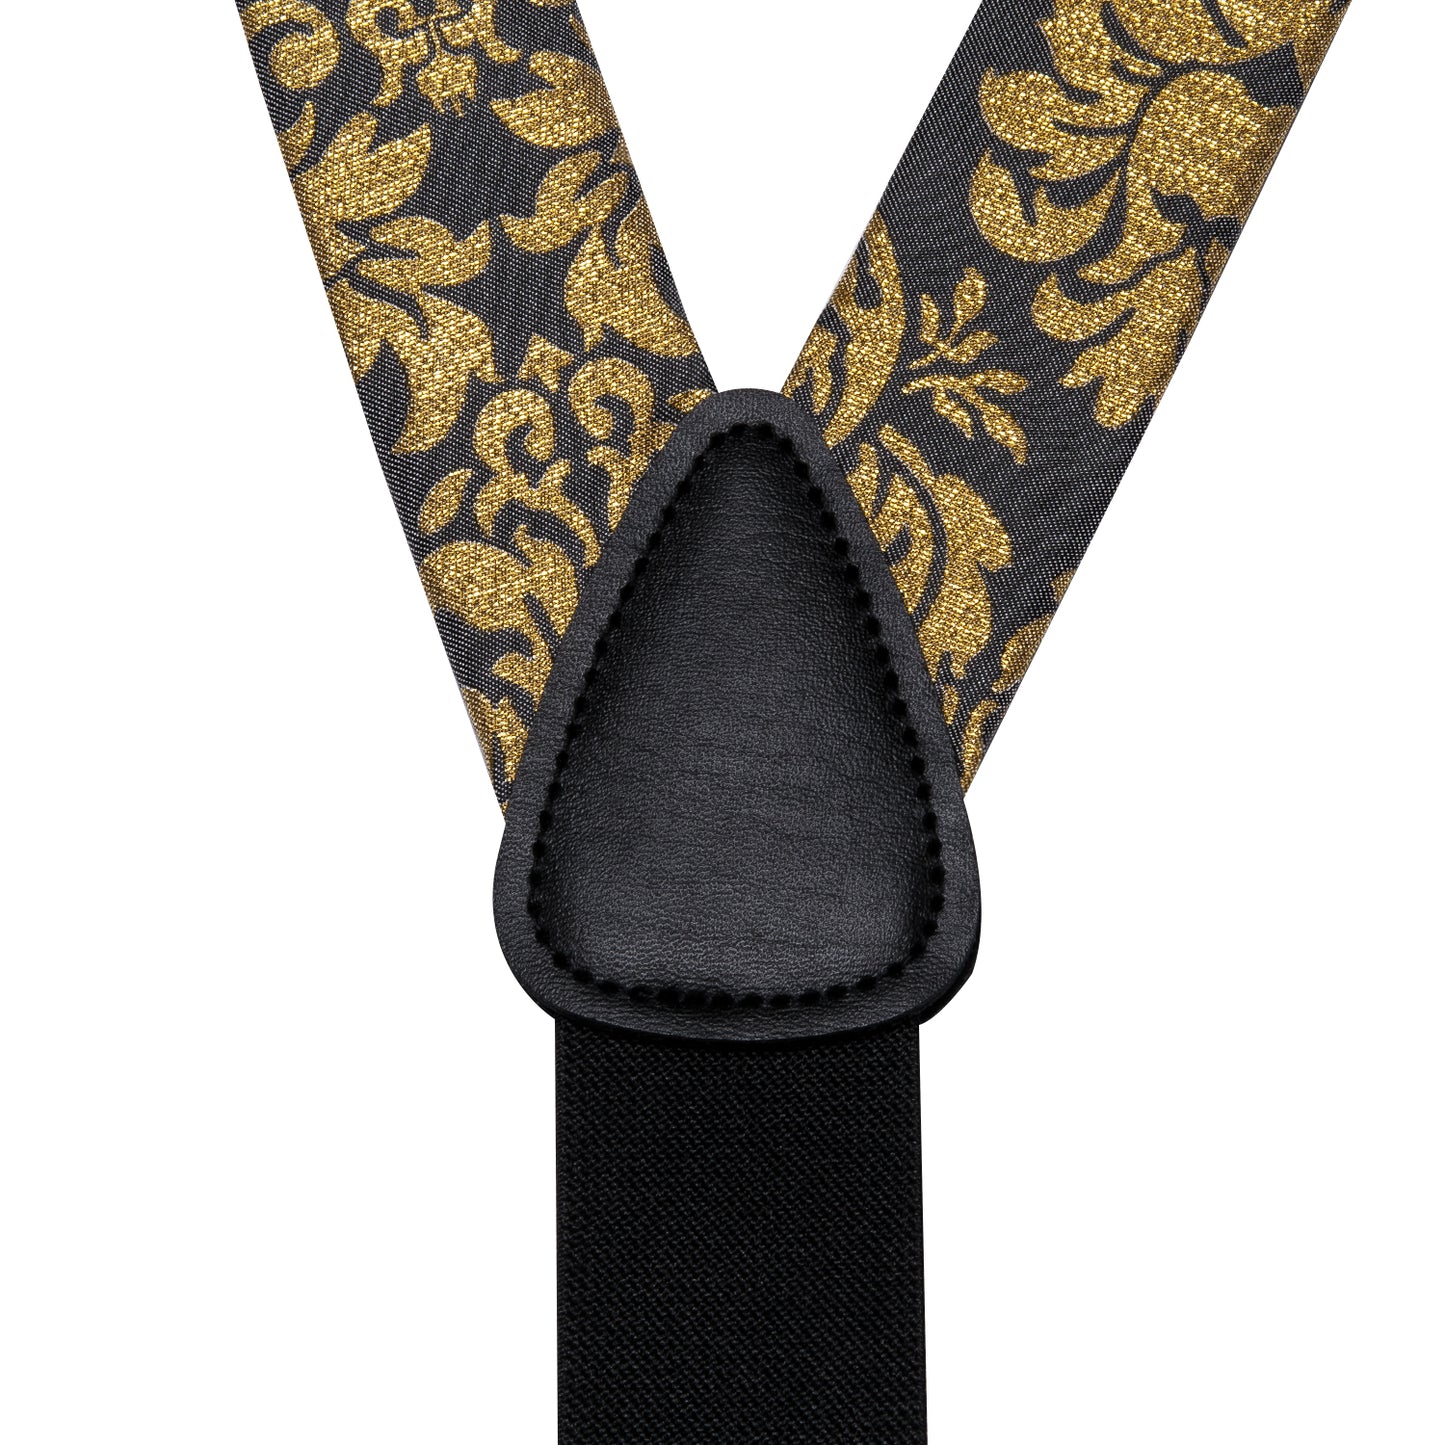 BD3027 Men's Braces Designer Clip Suspender Set [Gold Damask]